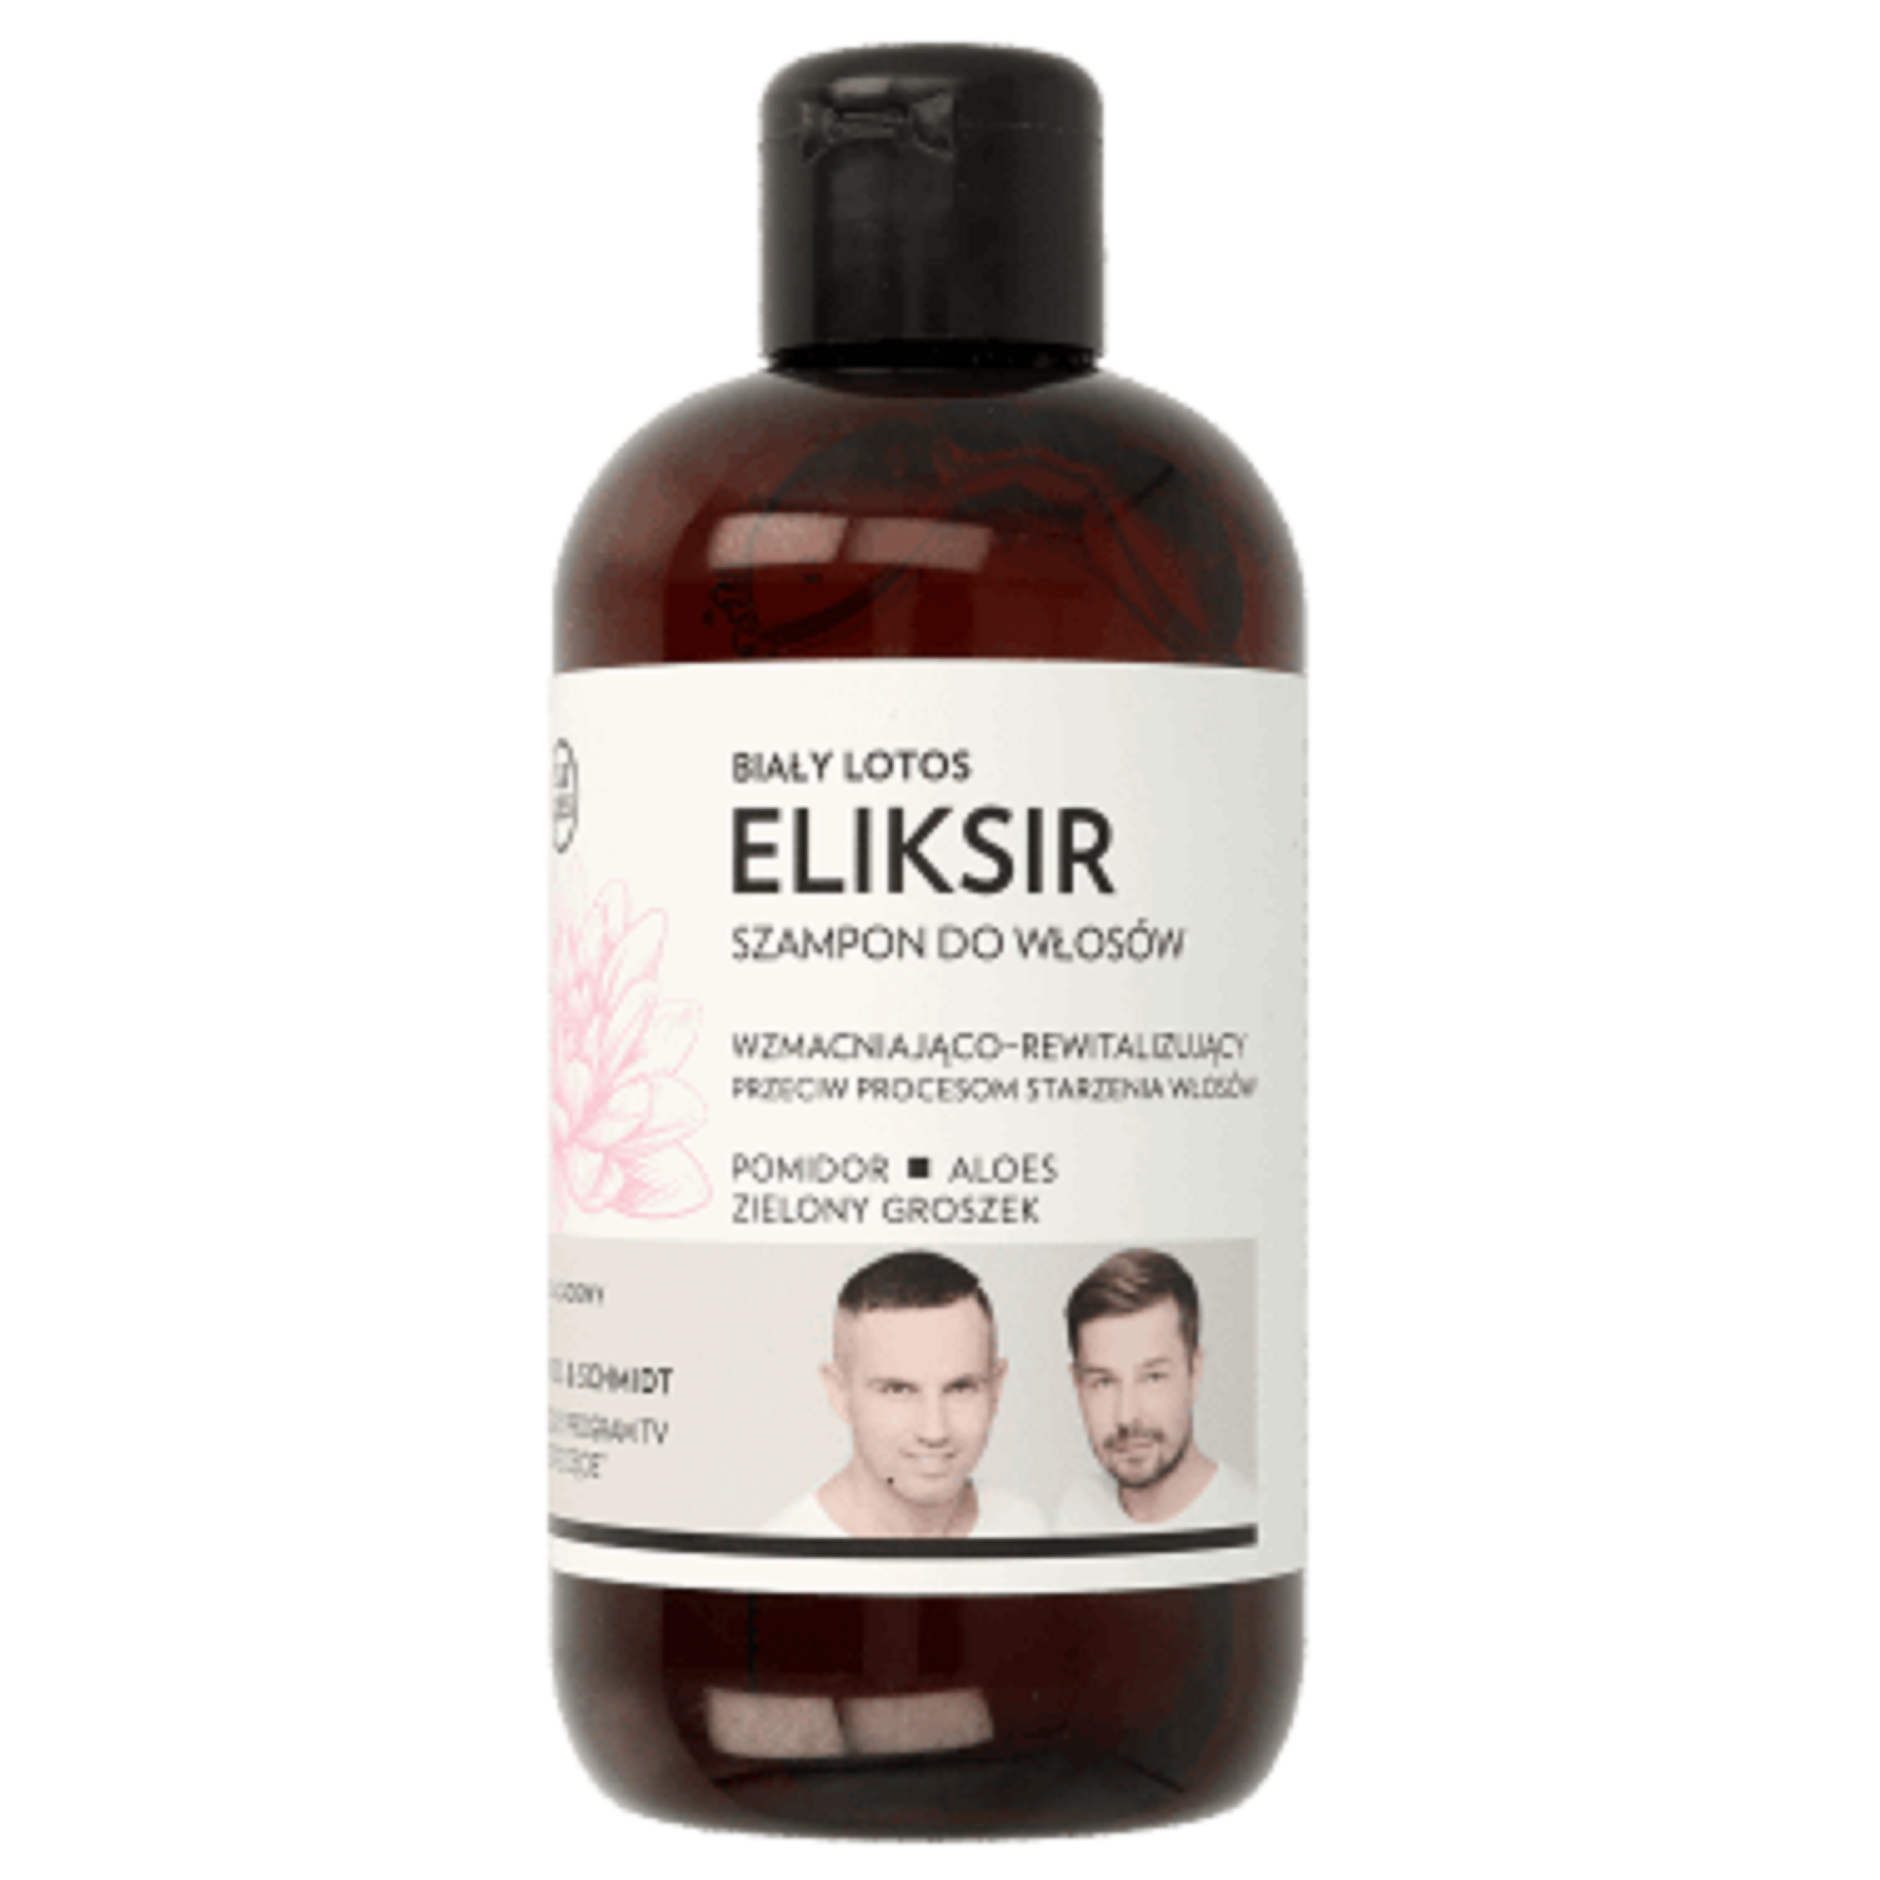 eliksir szampon do włosów rodzaje